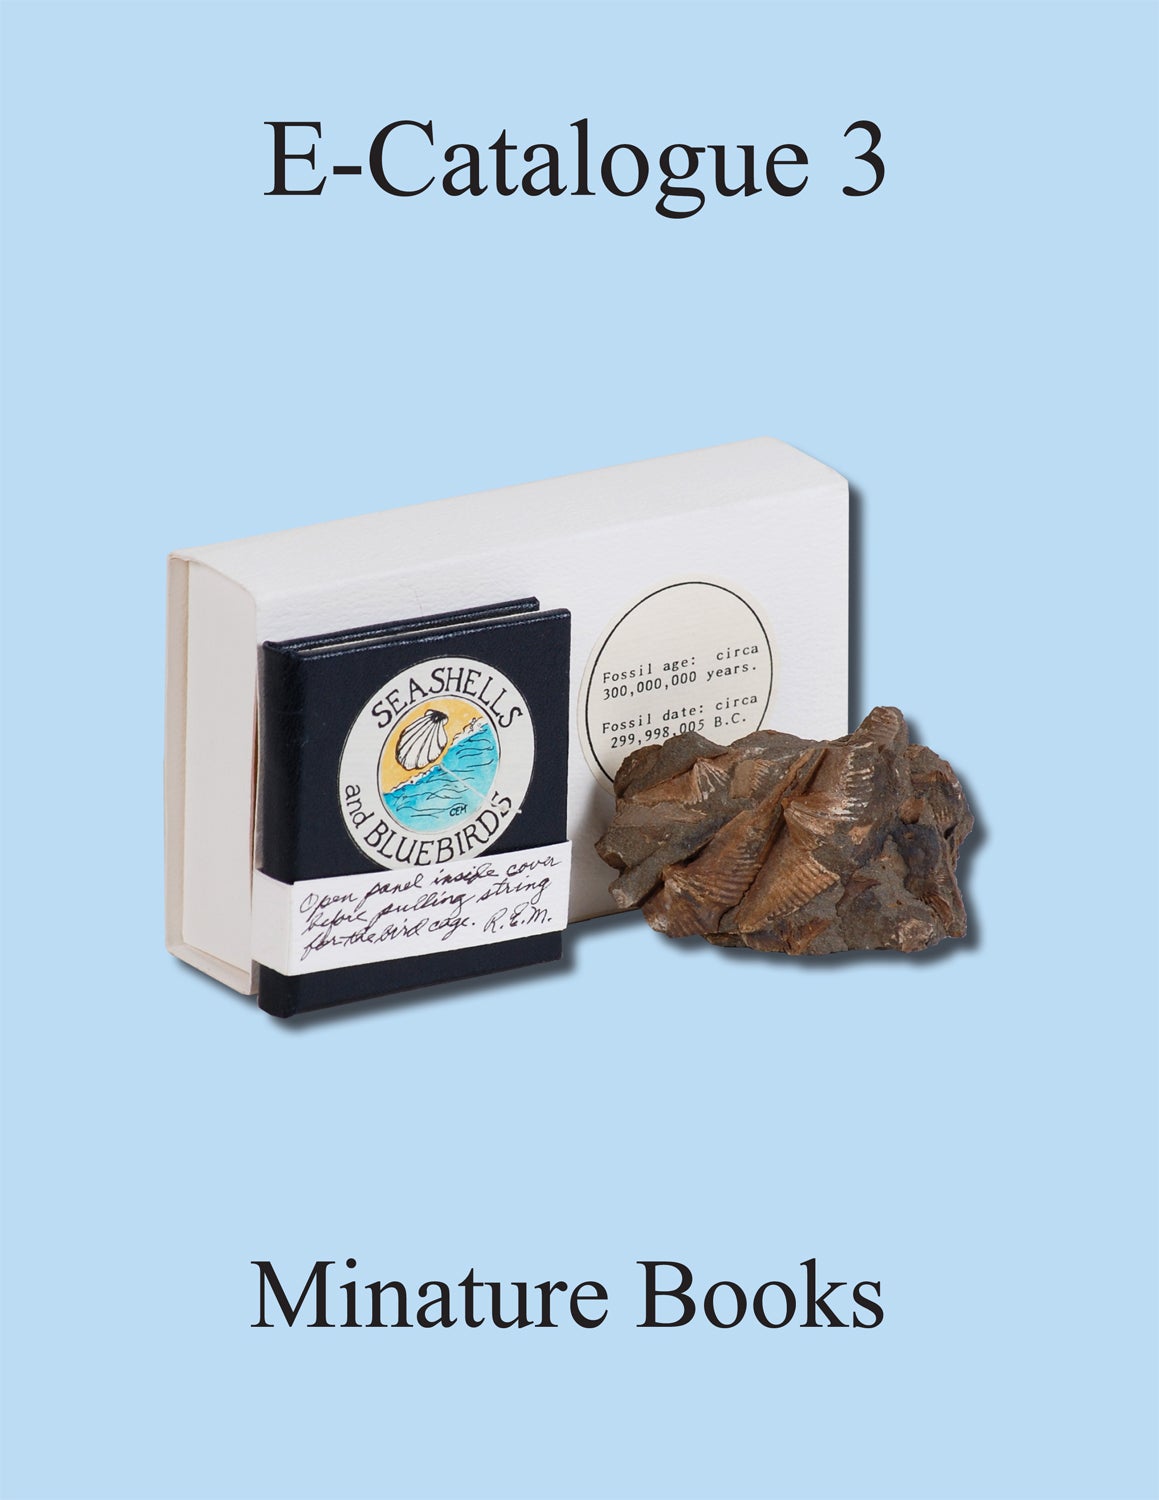 E-Catalogue 03 – Miniature Books